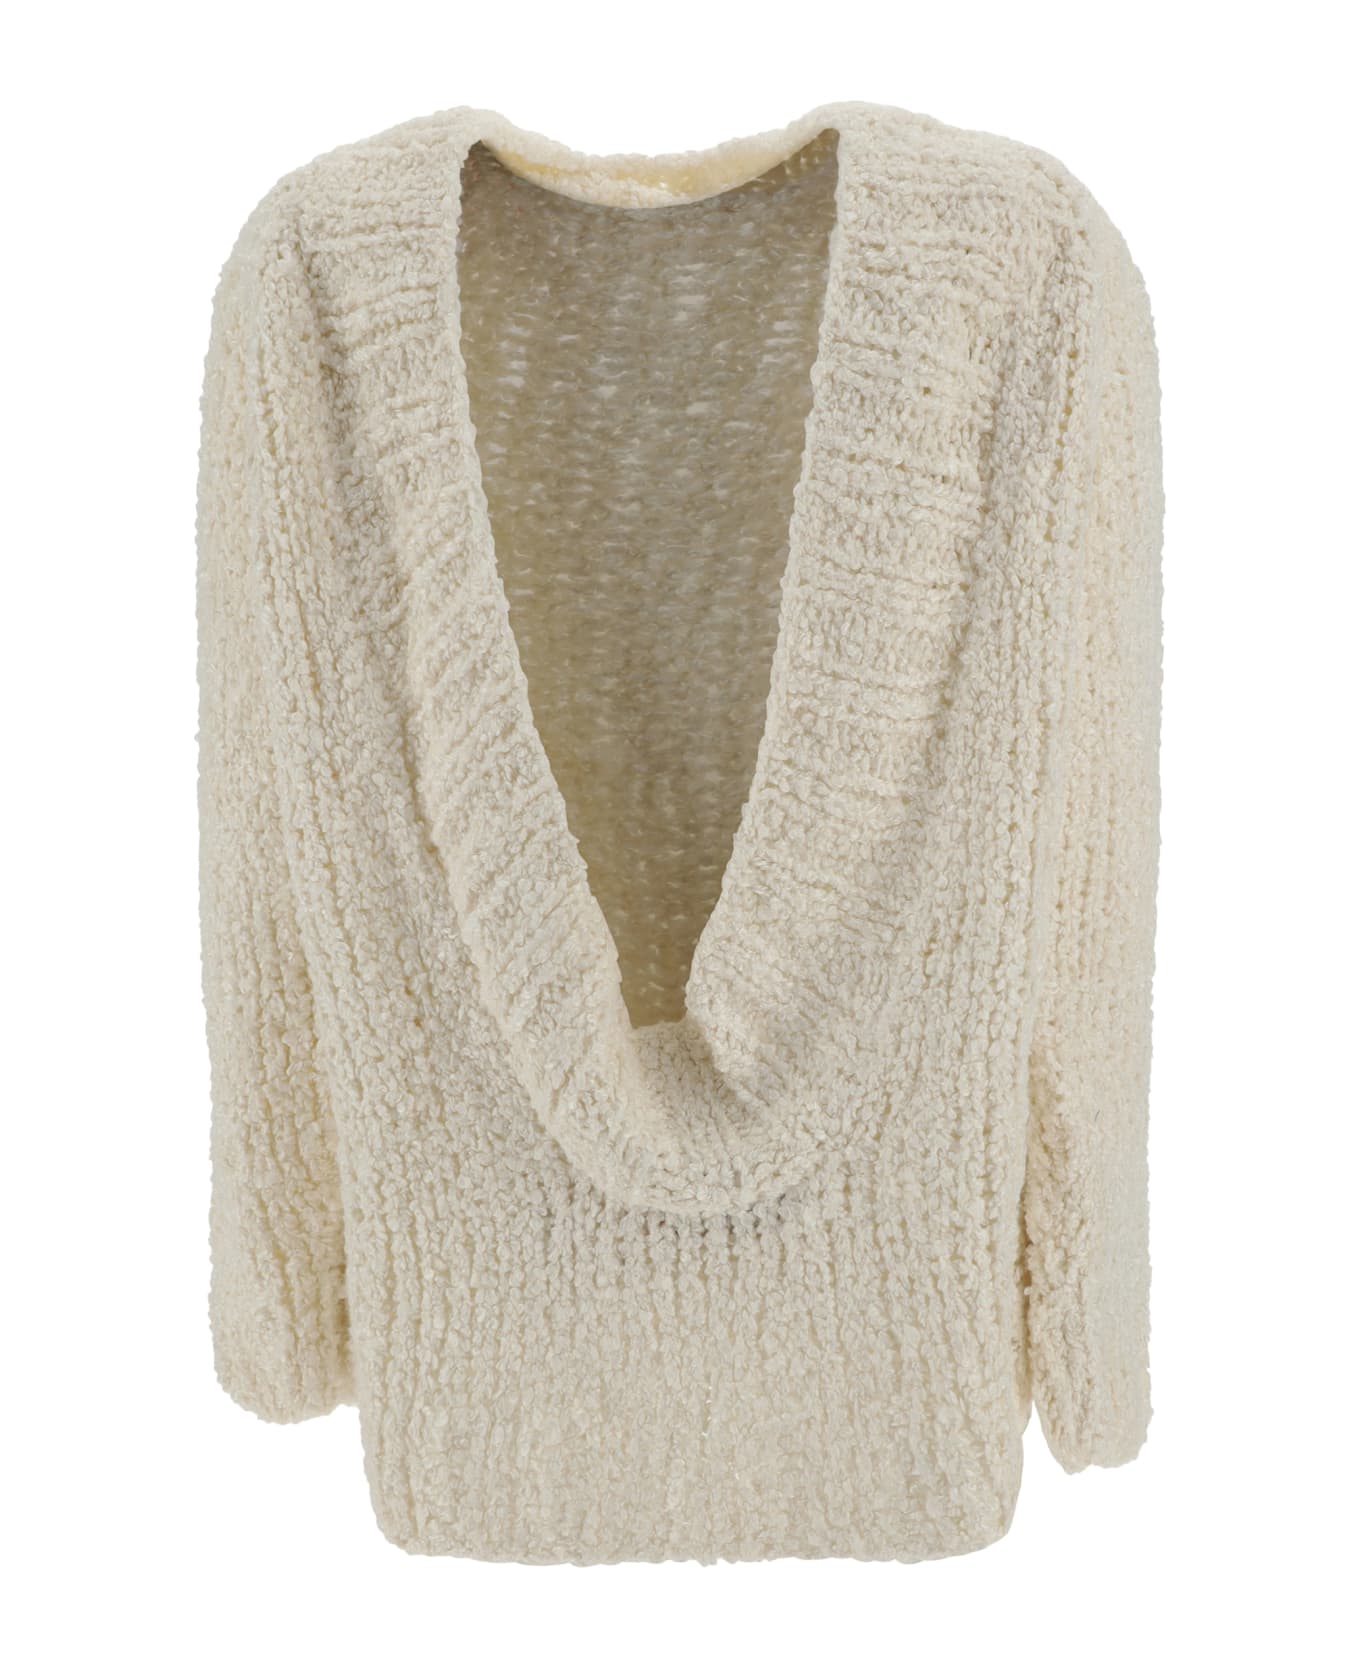 Wild Cashmere Sweater - Off-white 001